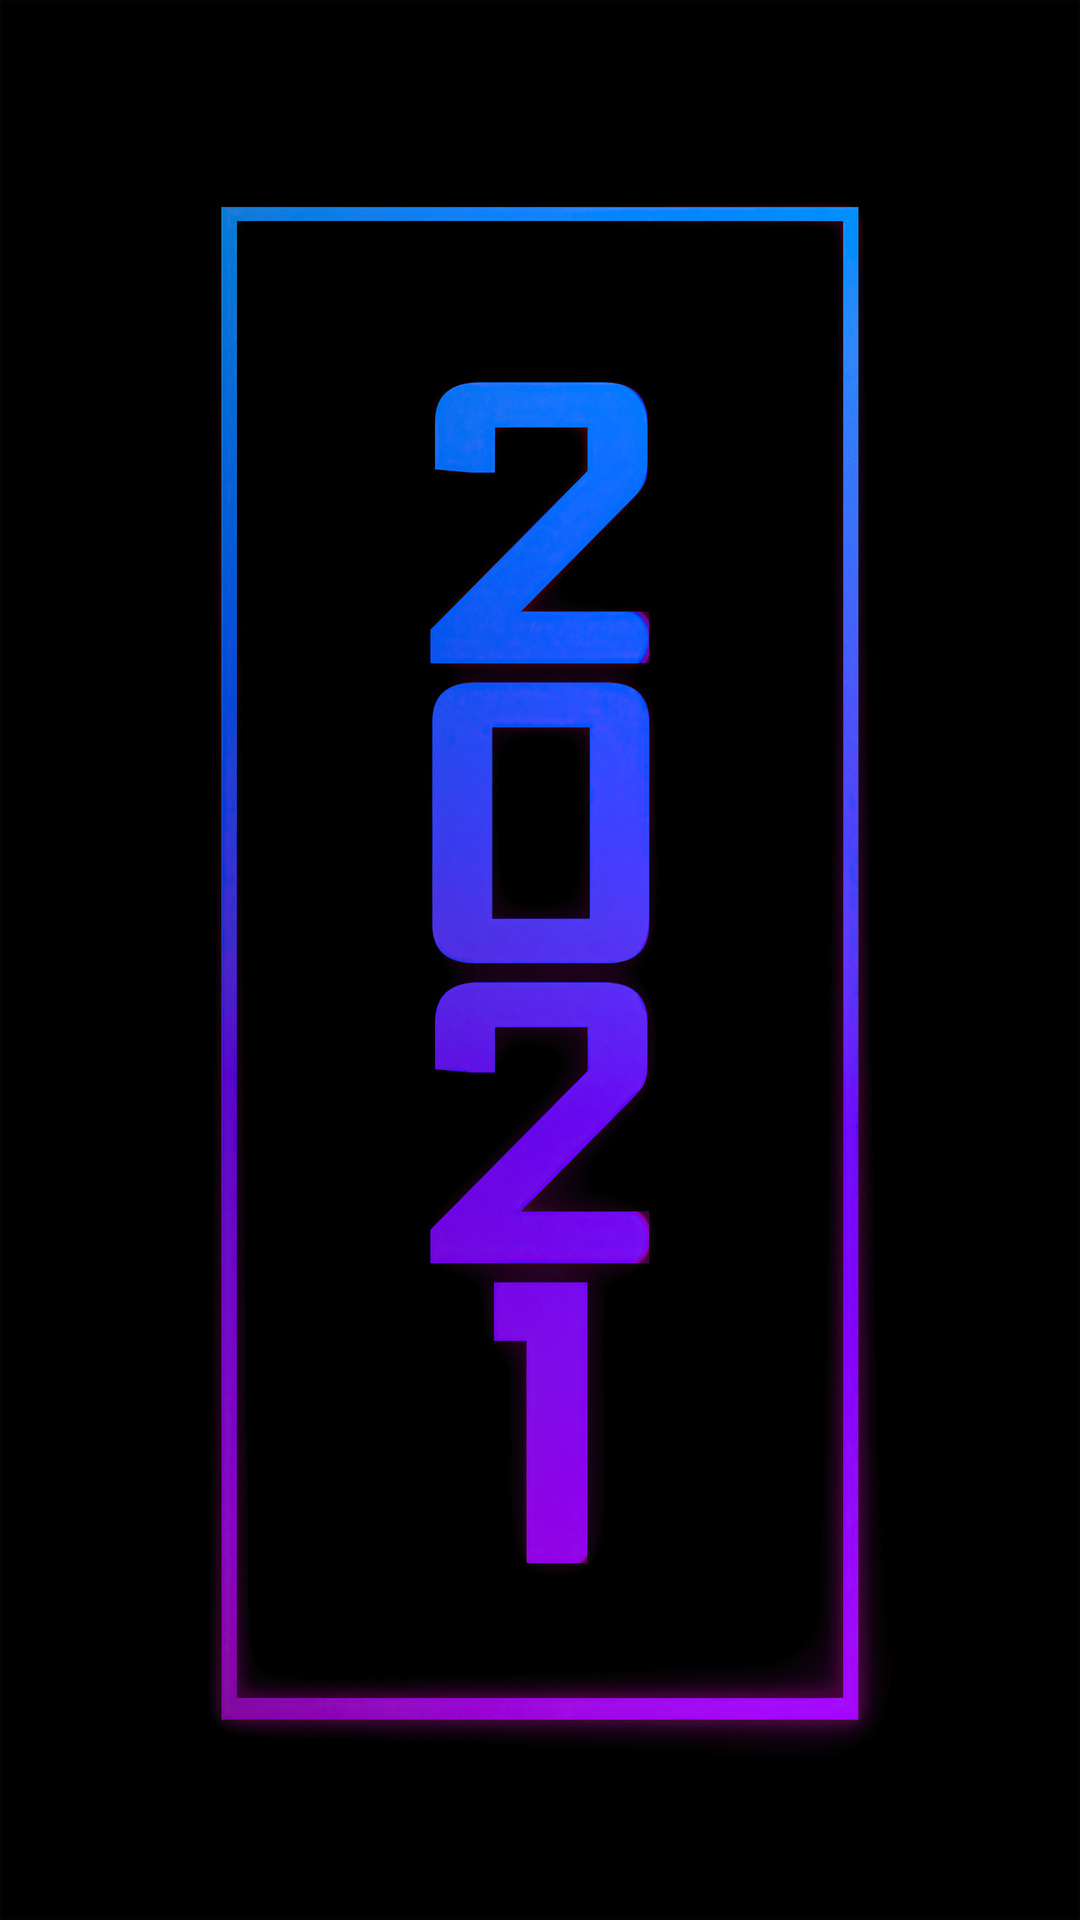 2021-typography-4k-13.jpg